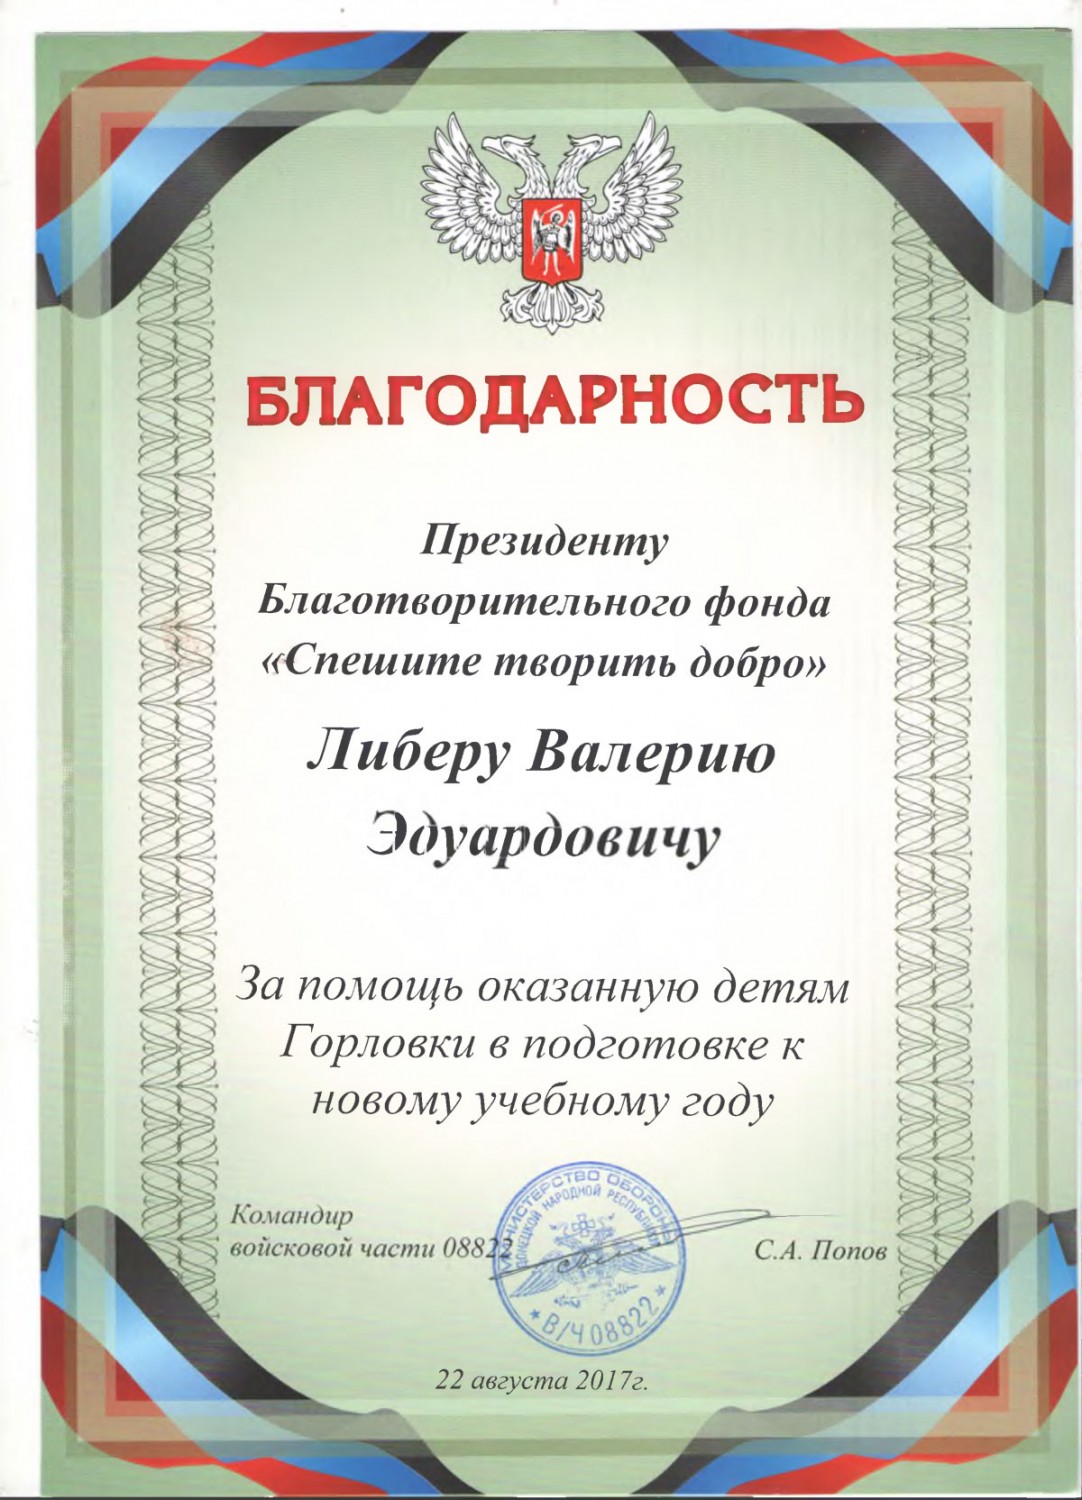 Благодарственное письмо от командира войсковой части 088822 Попова С.А.